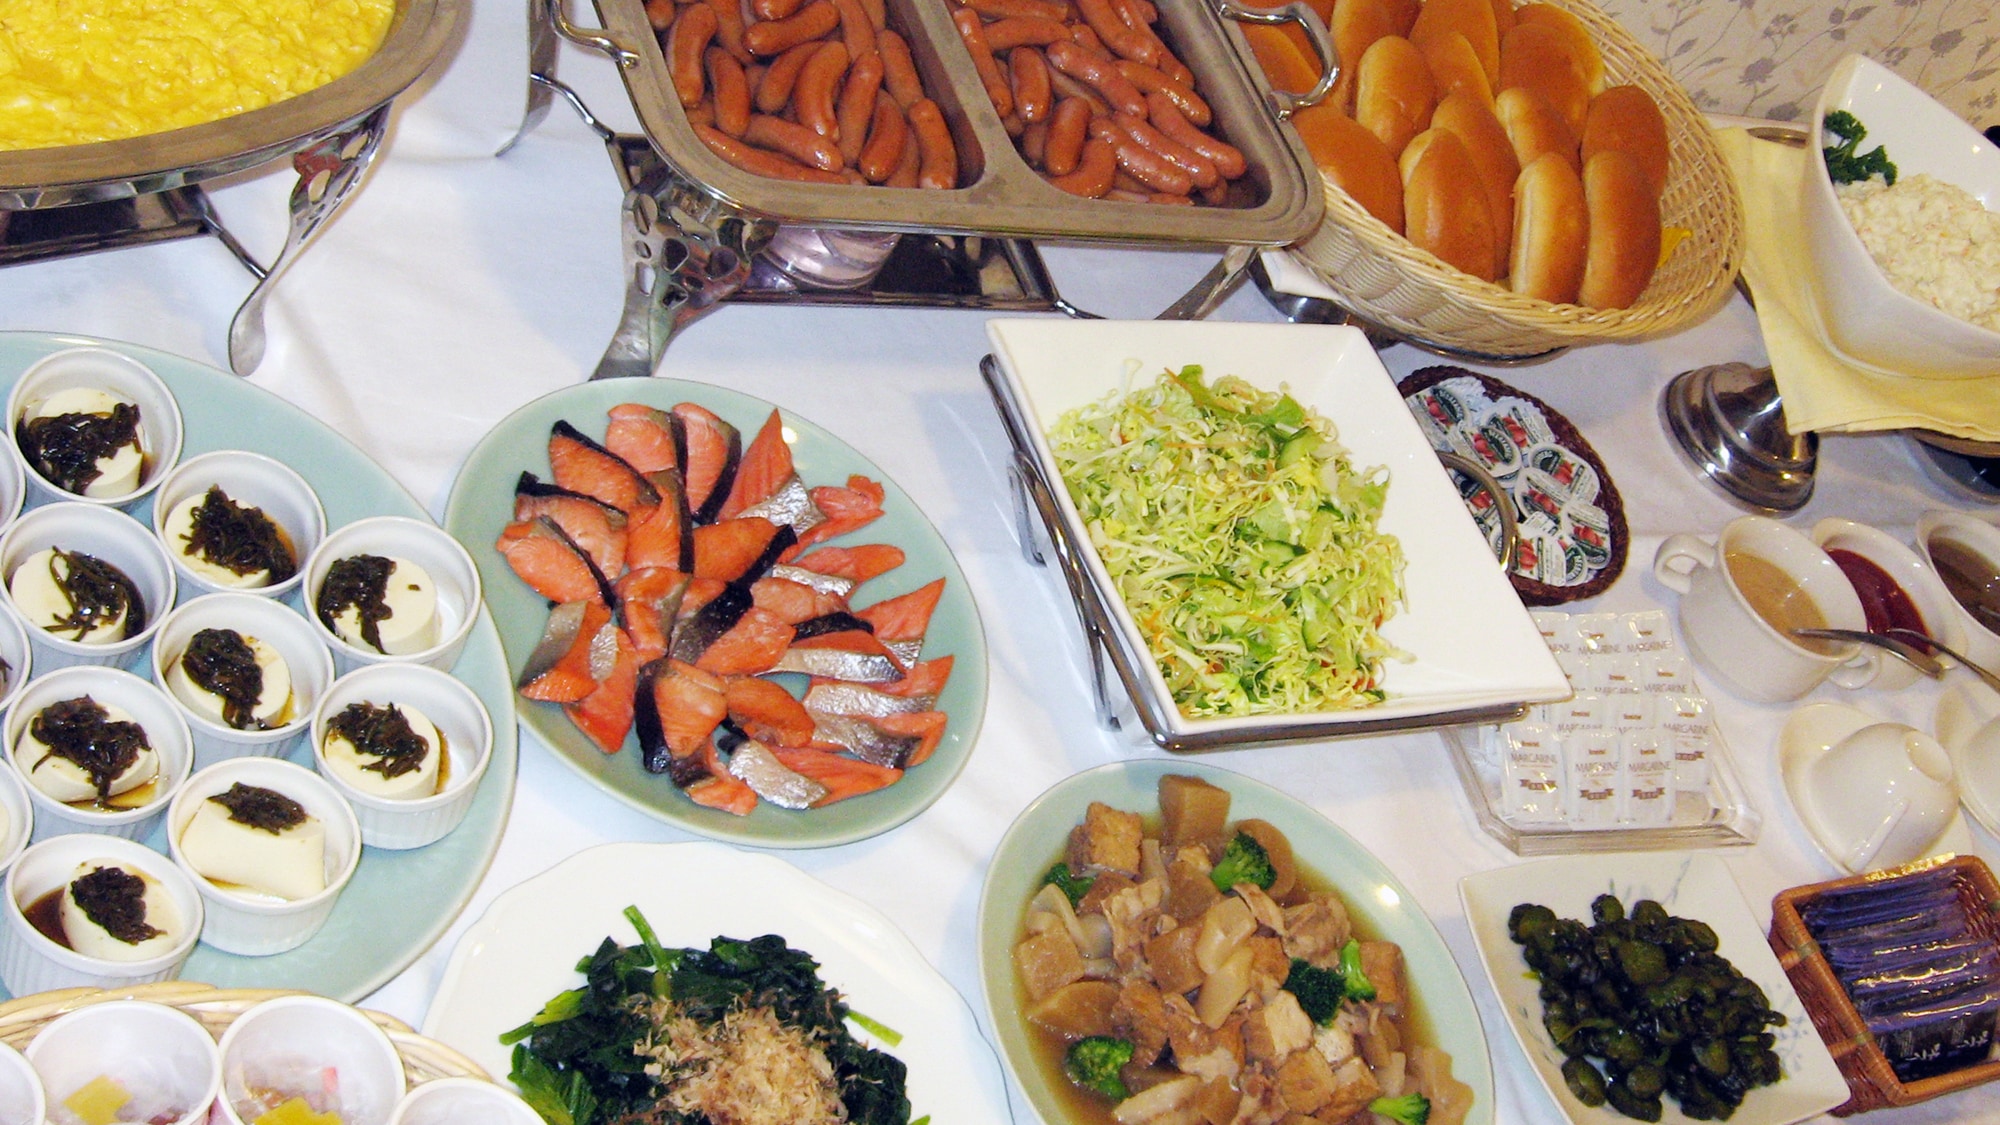 Sarapan Prasmanan makanan Jepang dan Barat≫ (7: 00-9: 00)